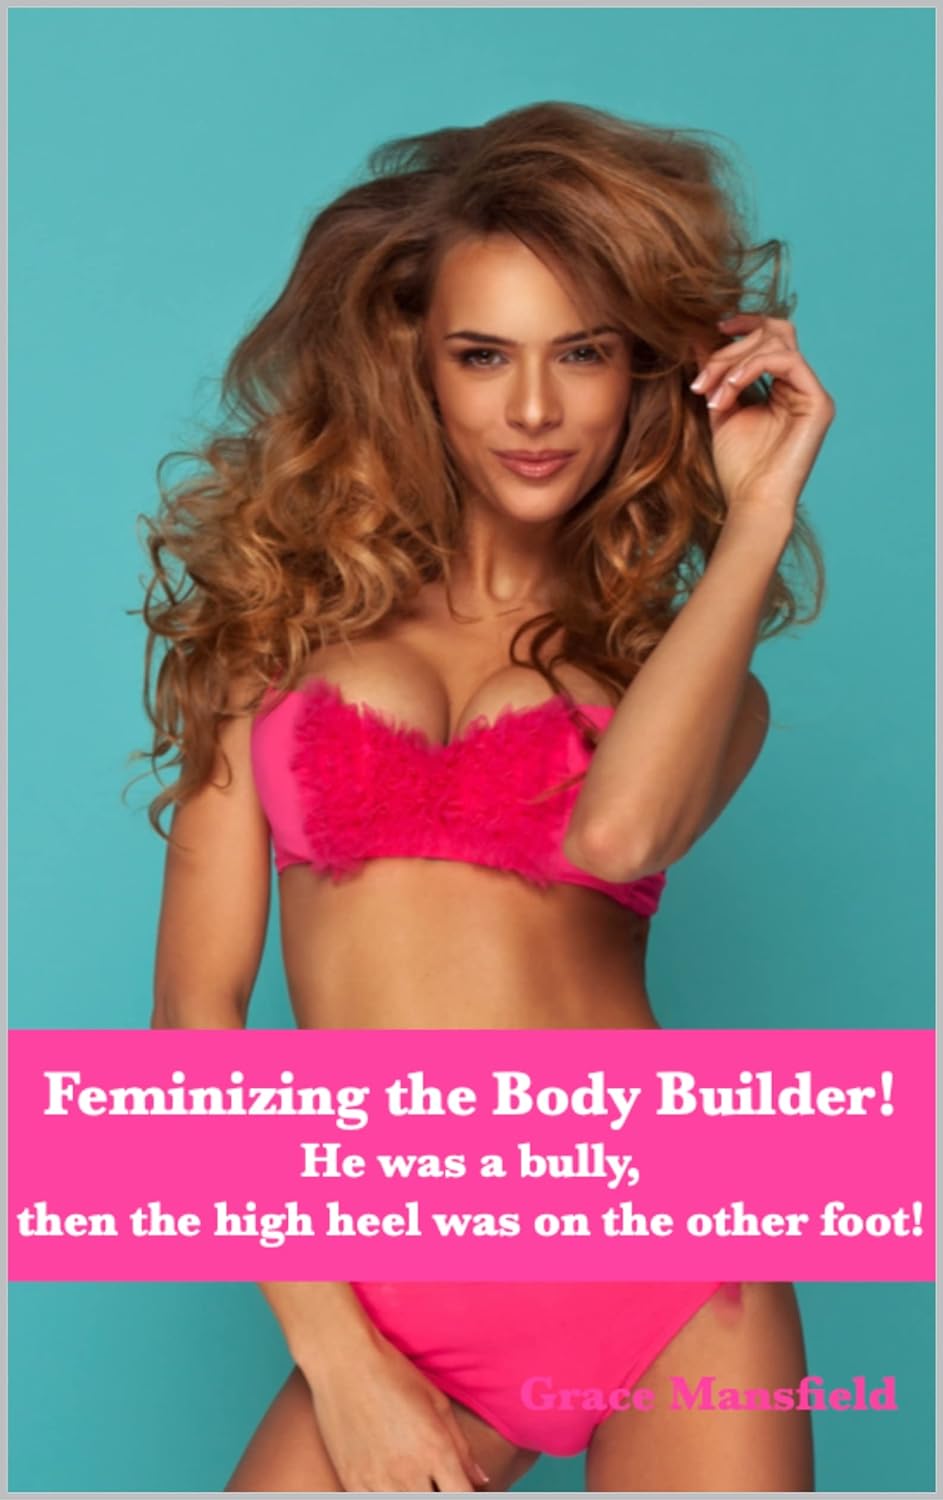 Feminizing the Body Builder!